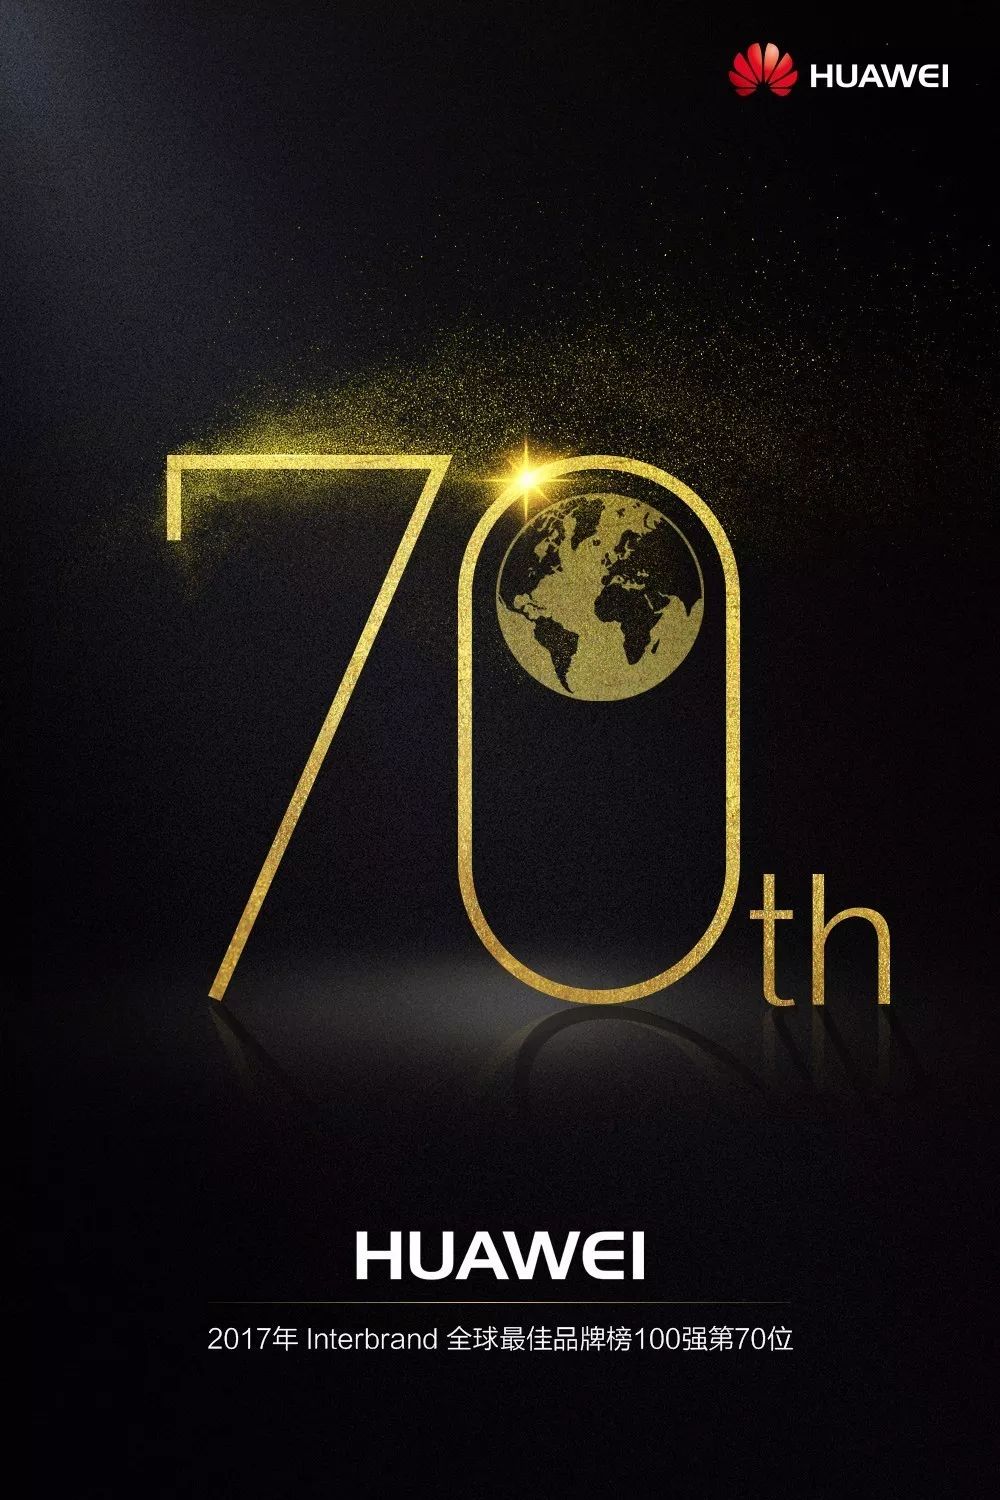 华为Interbrand全球最佳品牌排名第70位